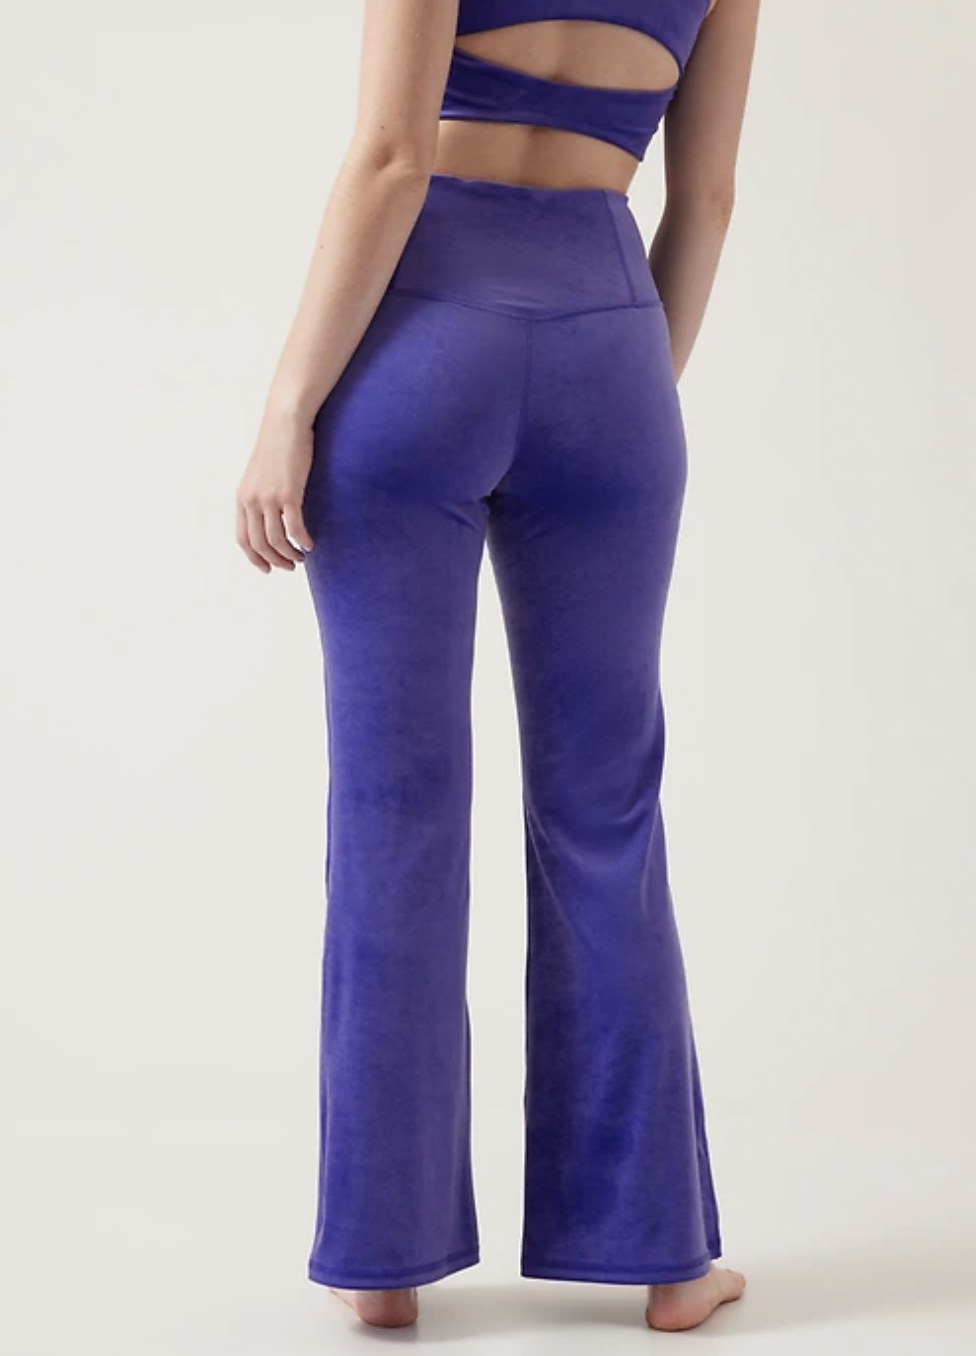 Model wearing the purple flare pants